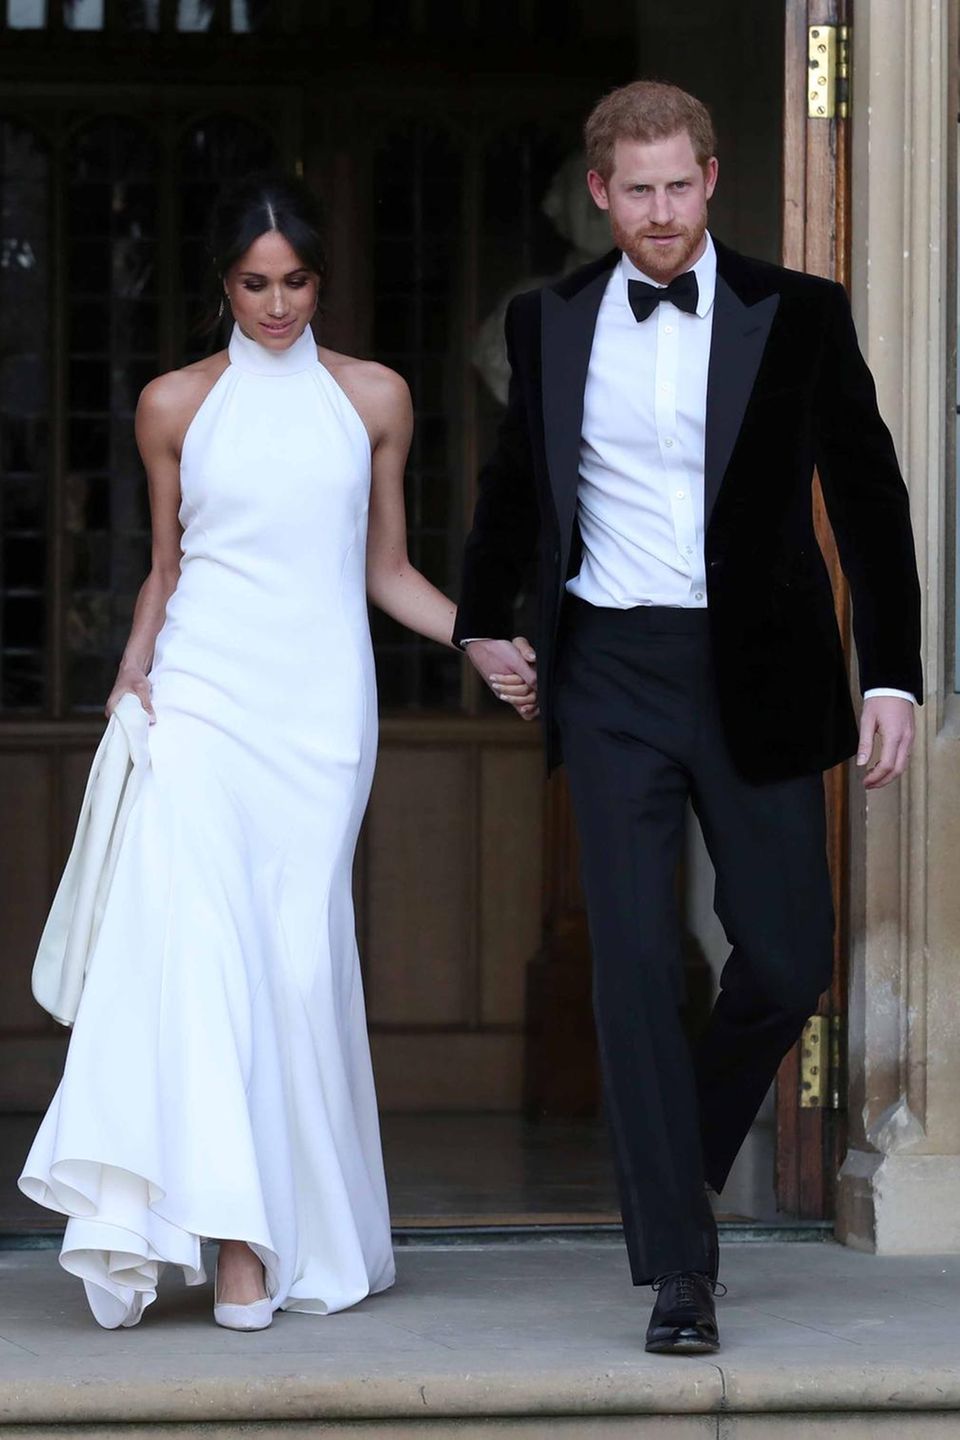 Hier kommt das frischgebackene Ehepaar, Prinz Harry und Herzogin Meghan, im abendlichen Outfit.